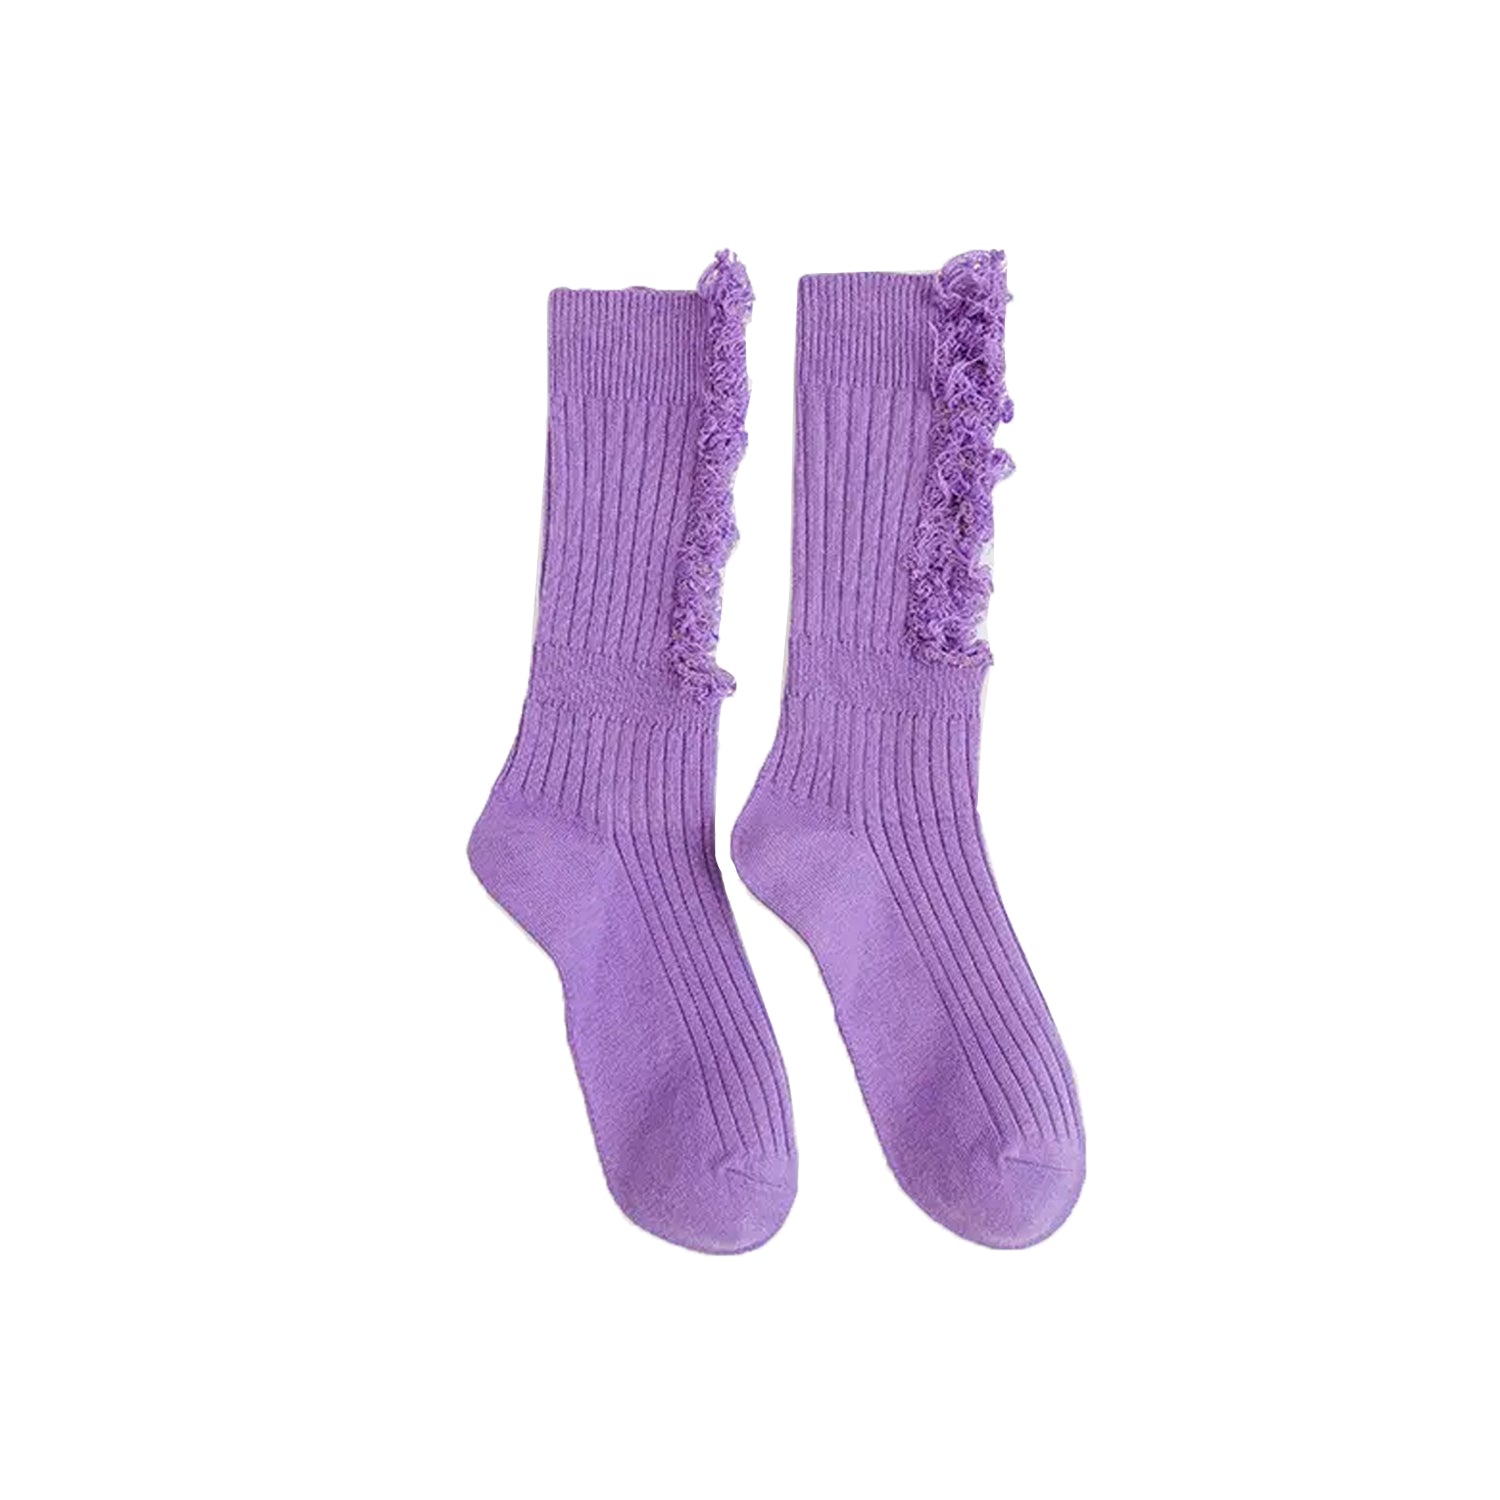 FLOOF Women's Distressed Socks in Purple